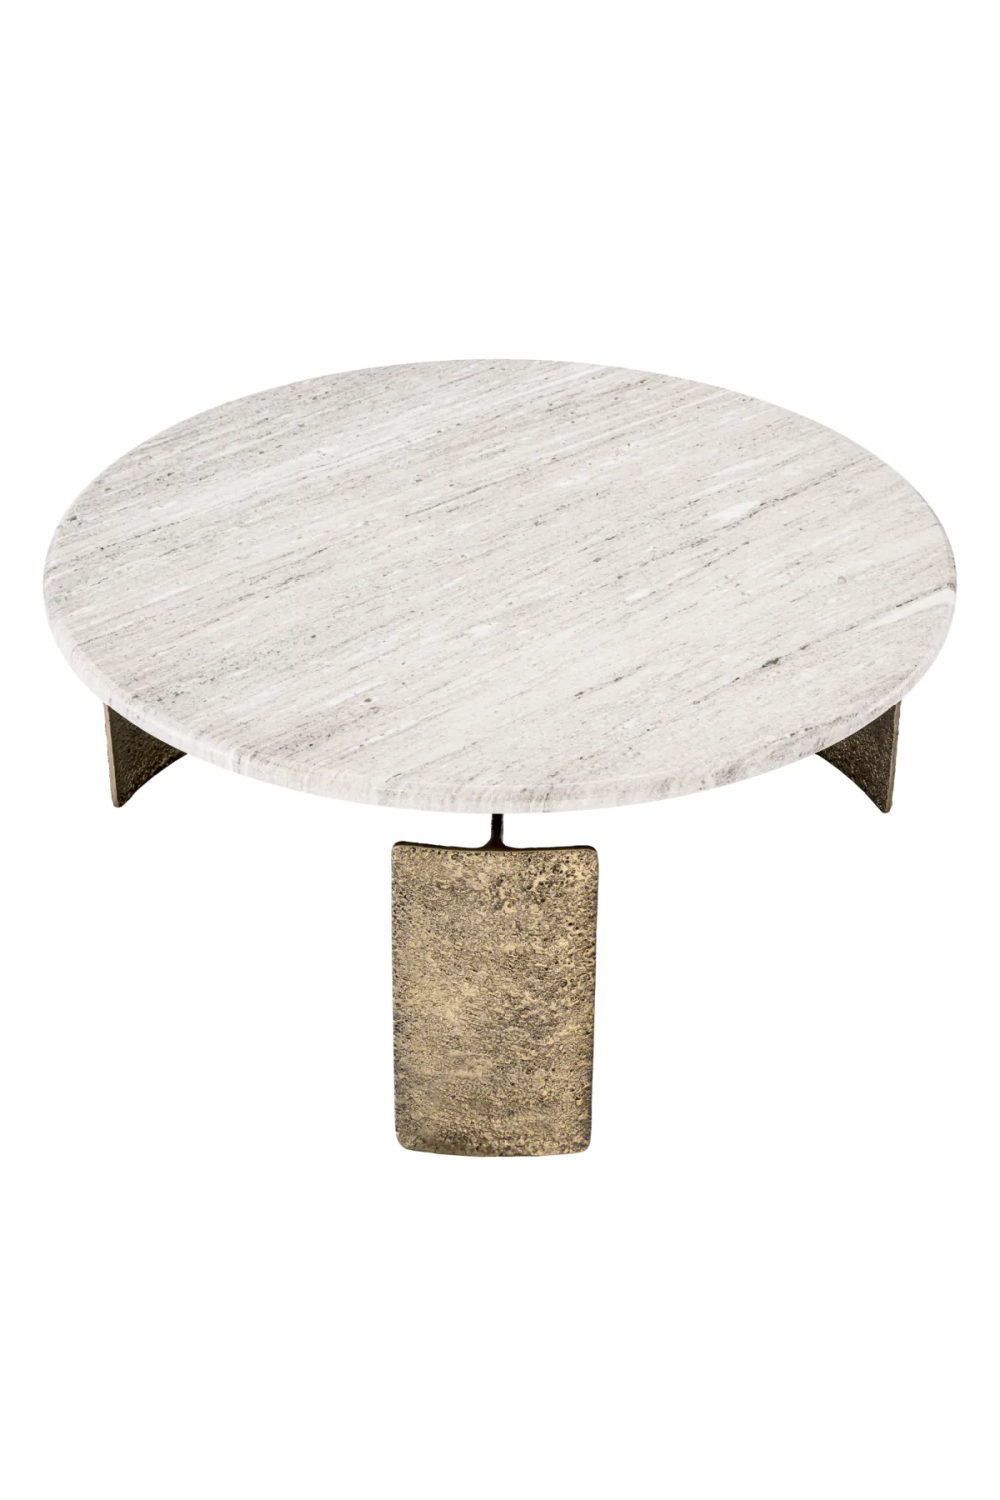 Round Beige Marble Coffee Table | Eichholtz Bodega | Oroa .com